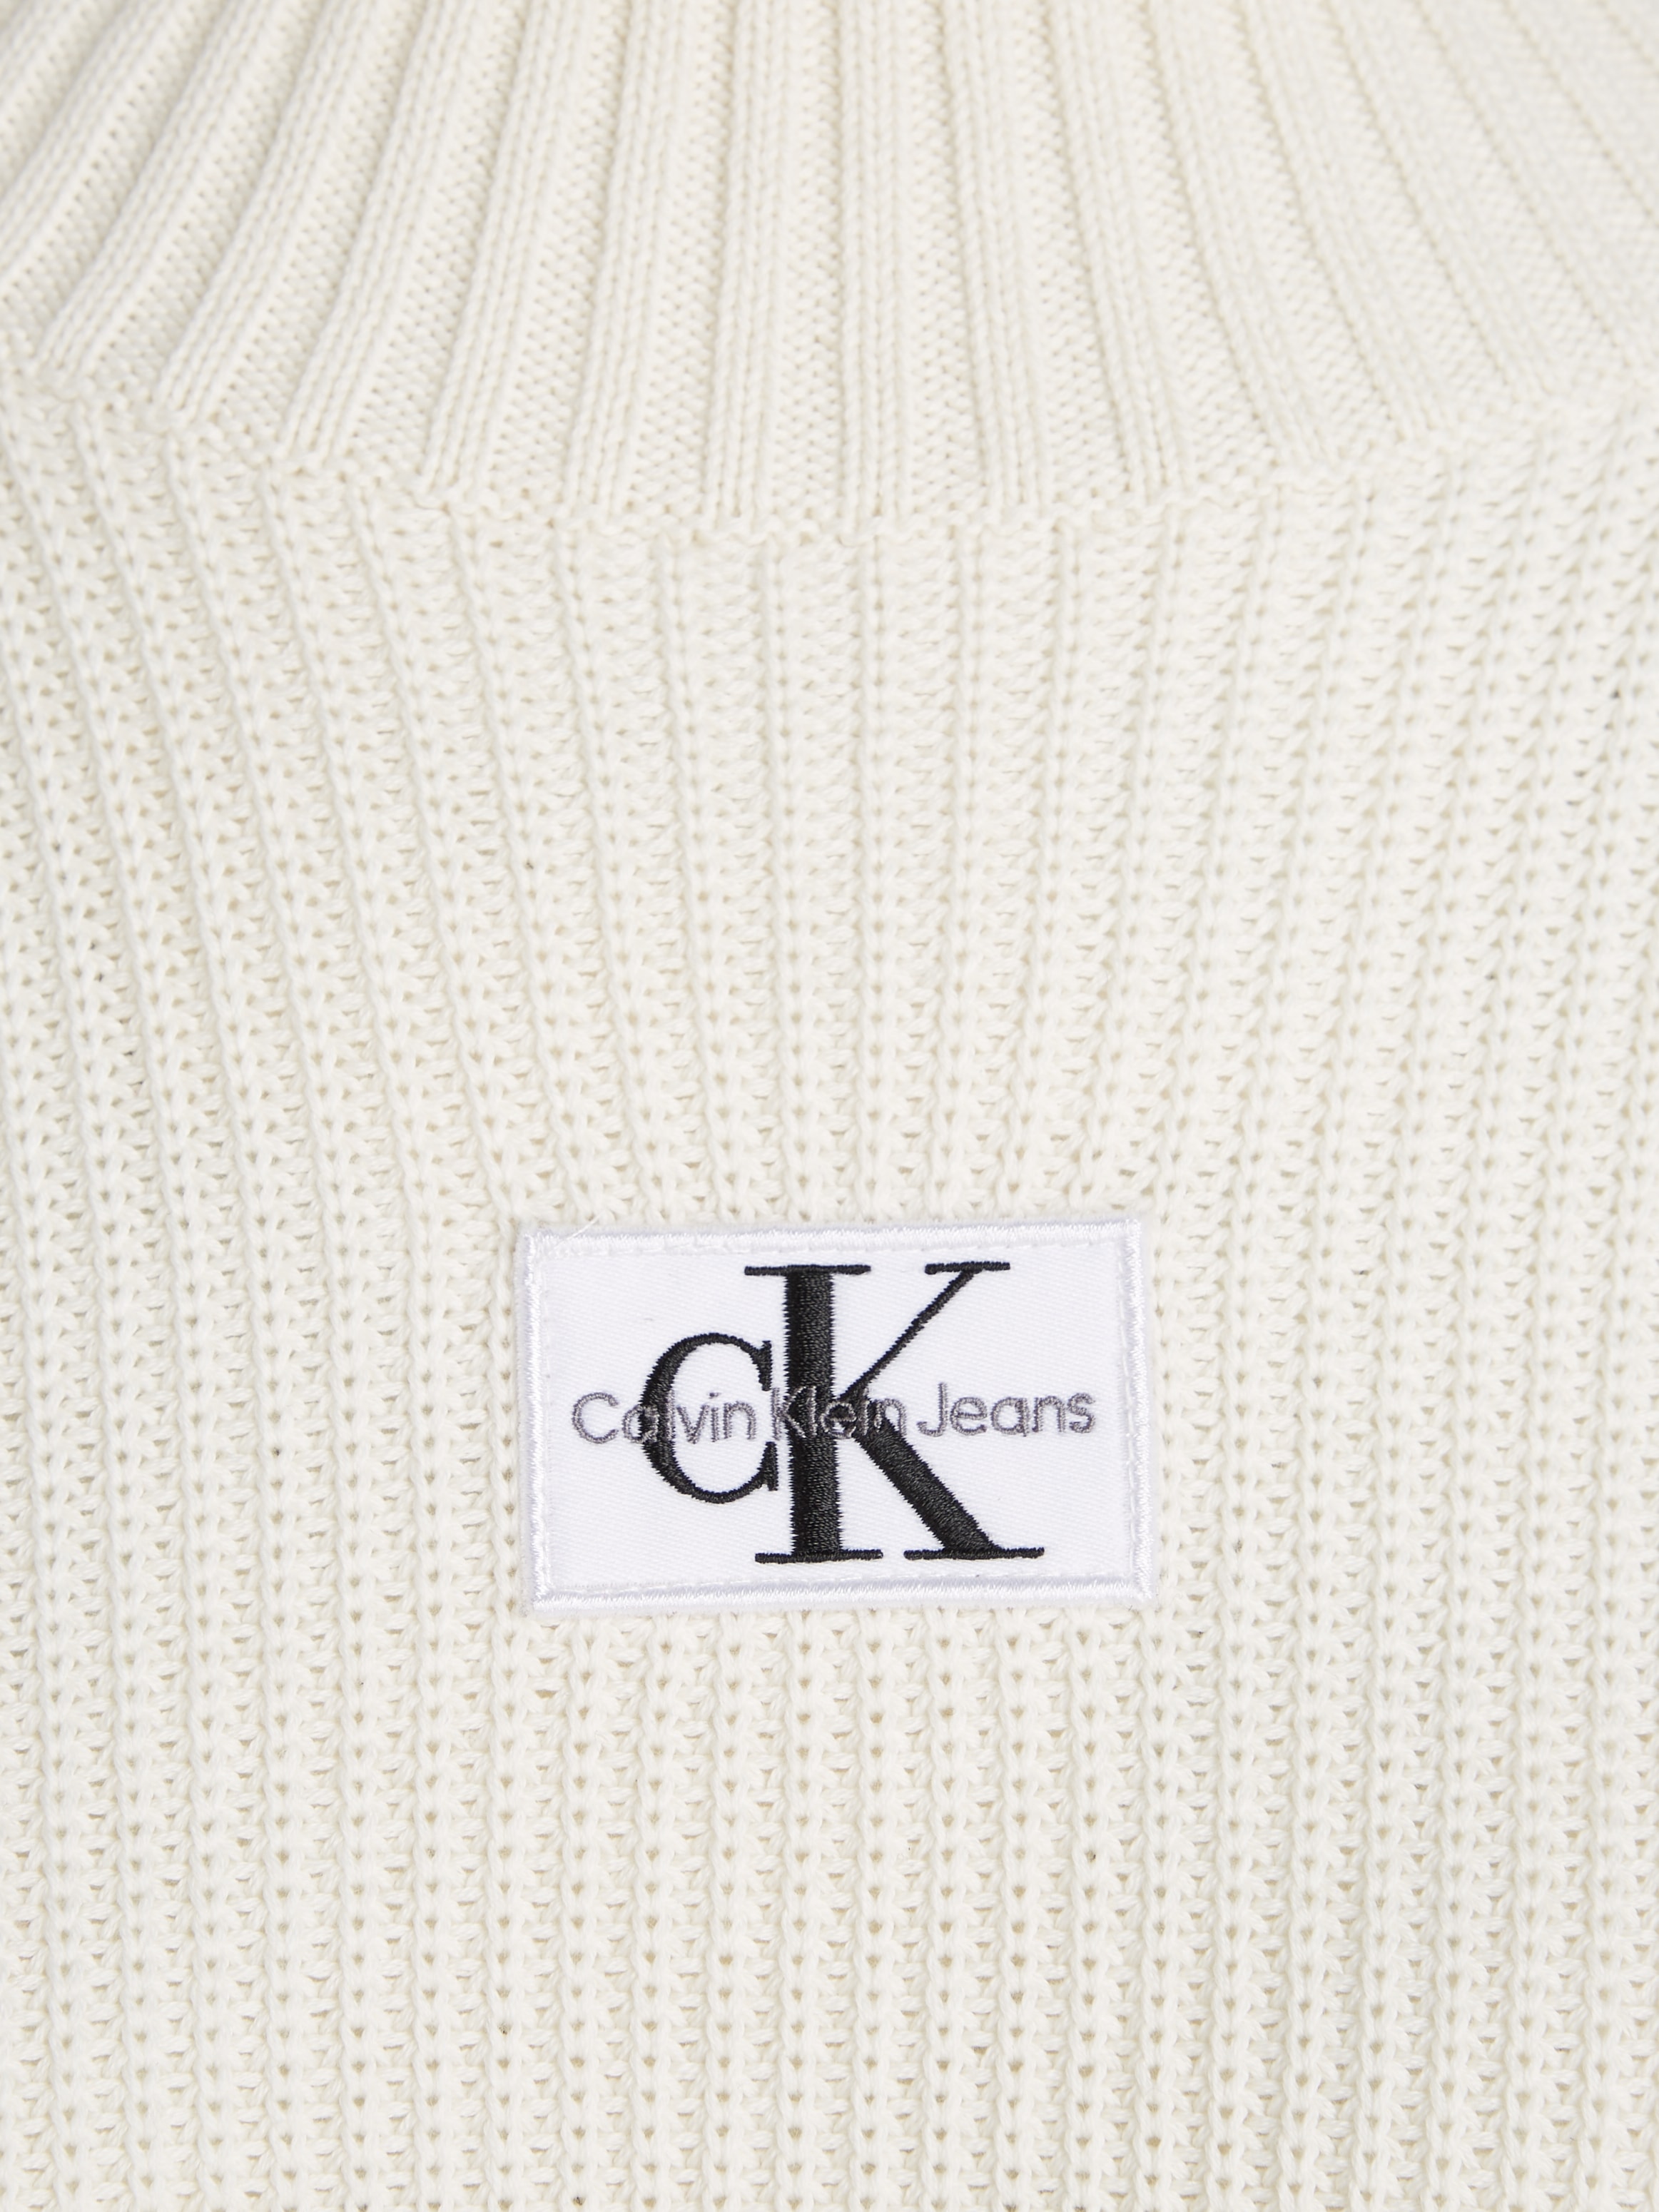 Calvin Klein Jeans bei SWEATER LOOSE DRESS« Sweatkleid LABEL ♕ »WOVEN